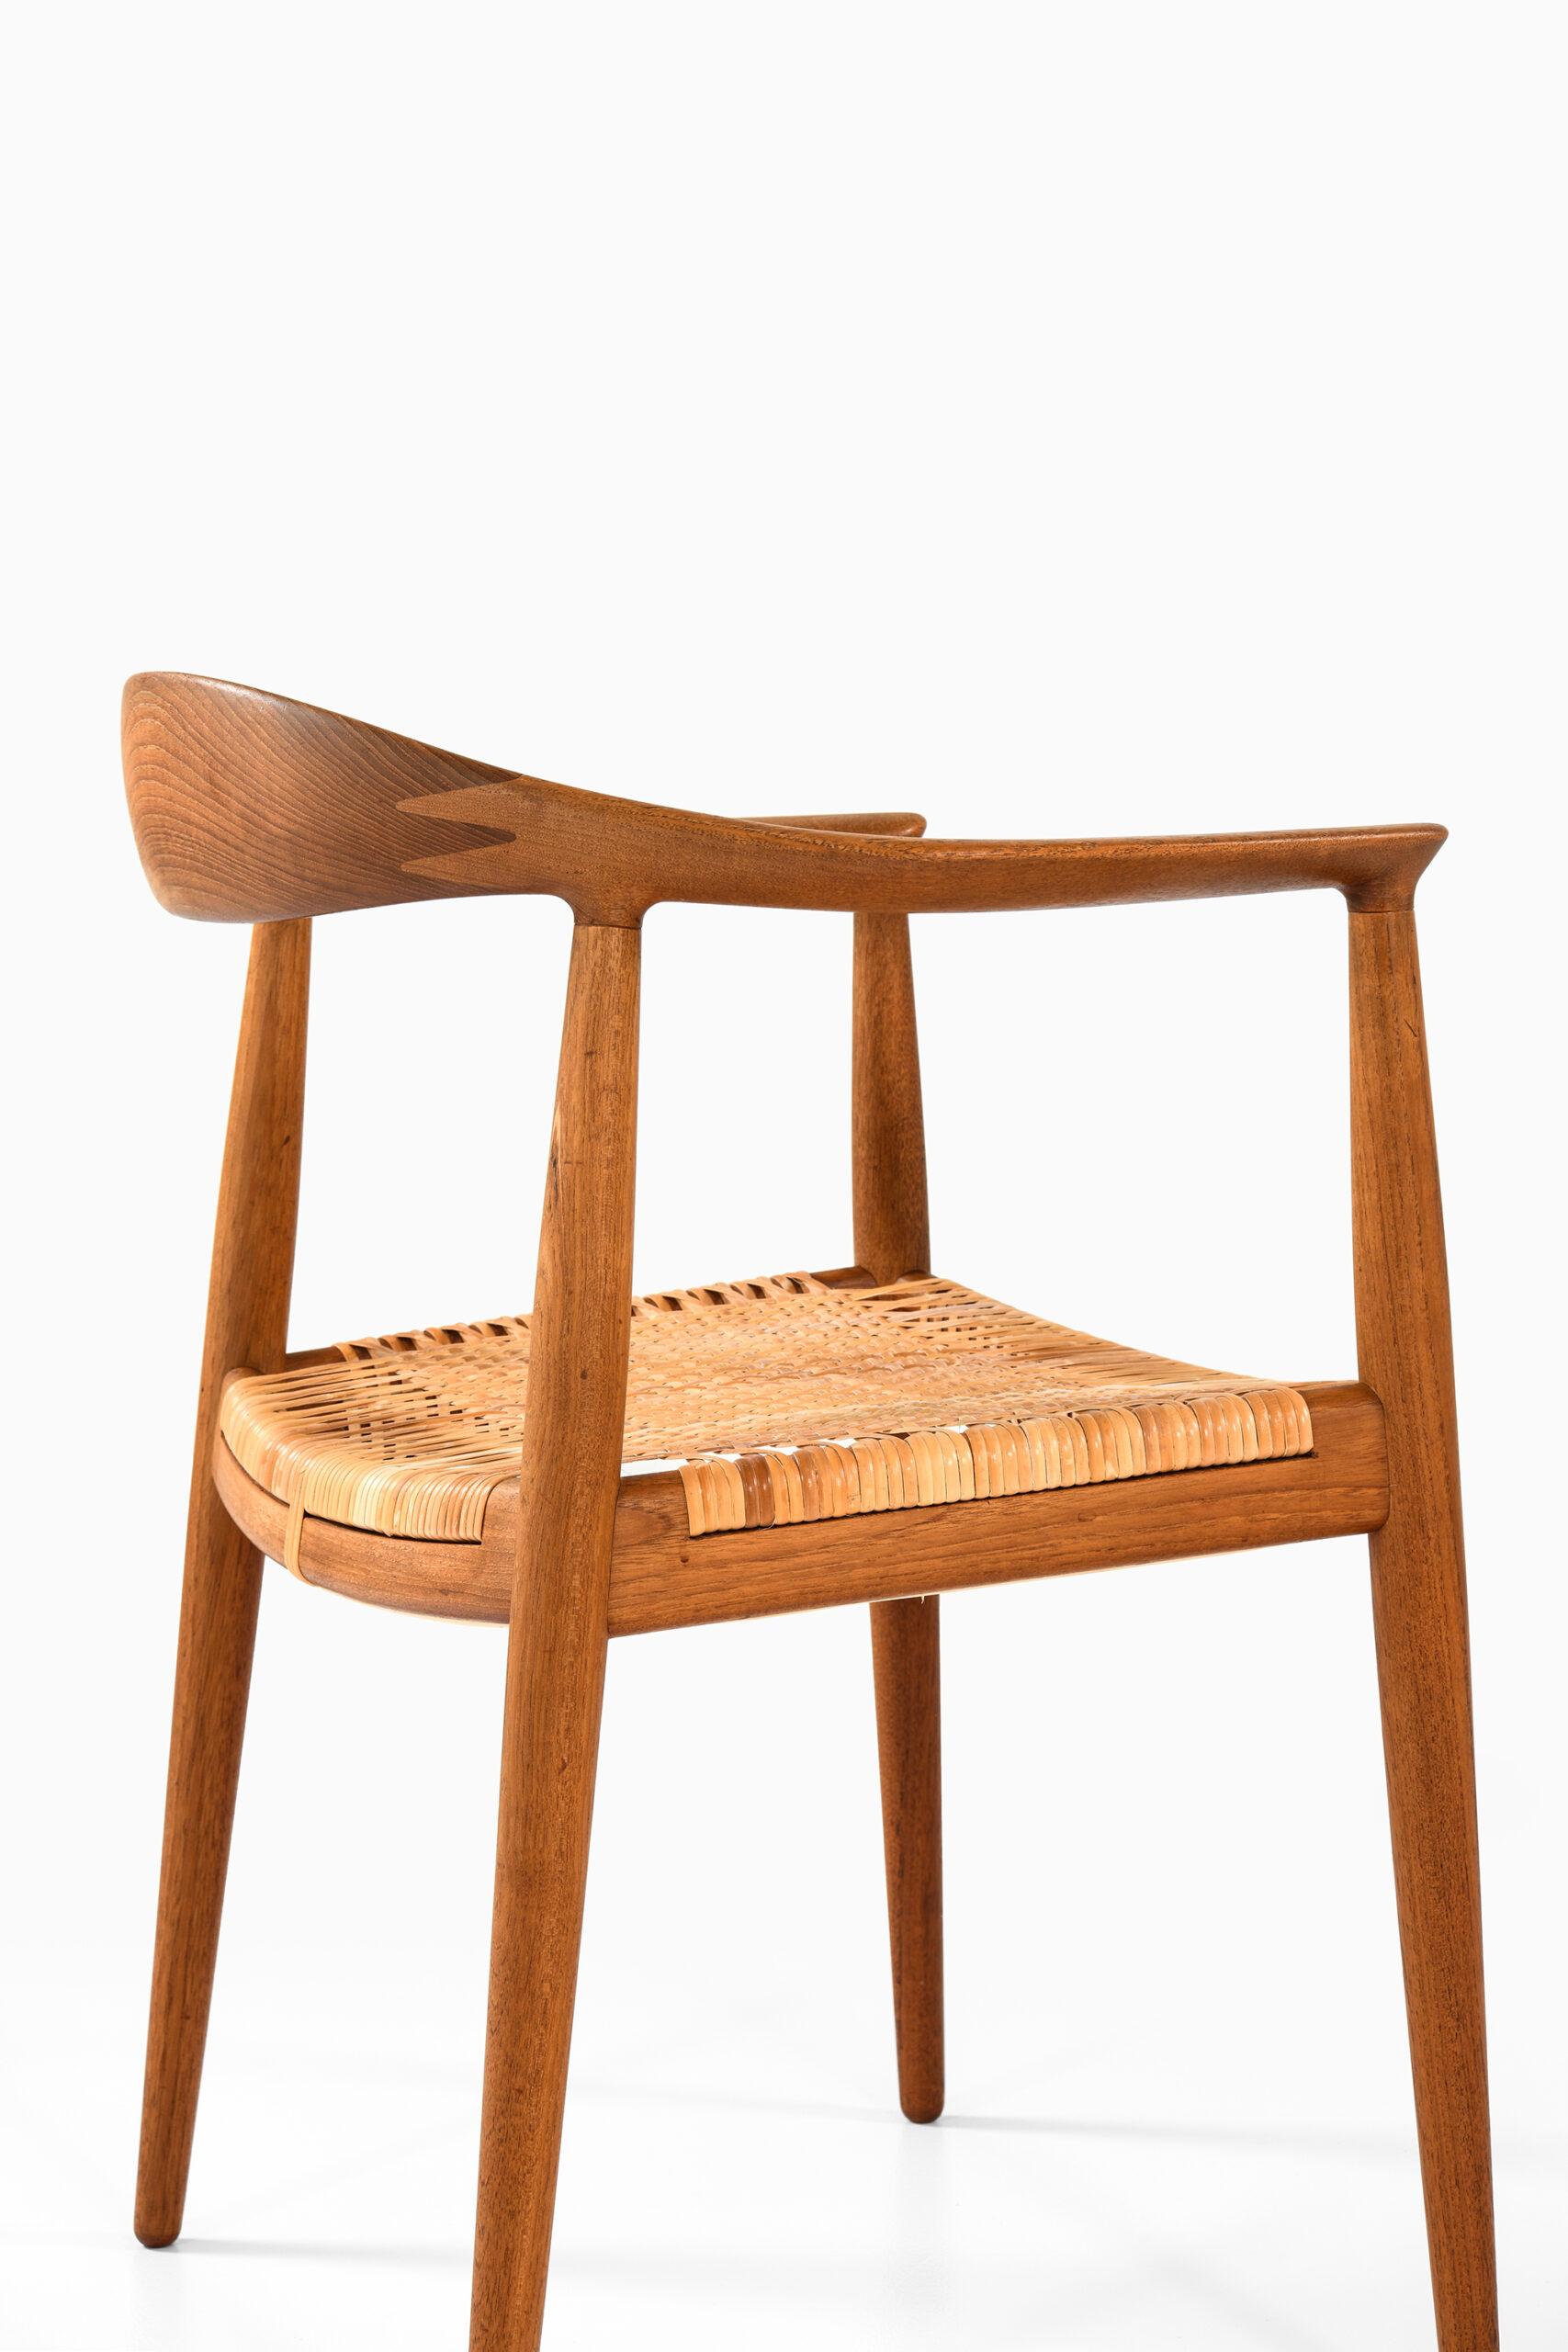 Hans Wegner Armchair Model Jh-501 / the Chair by Johannes Hansen in Denmark For Sale 2